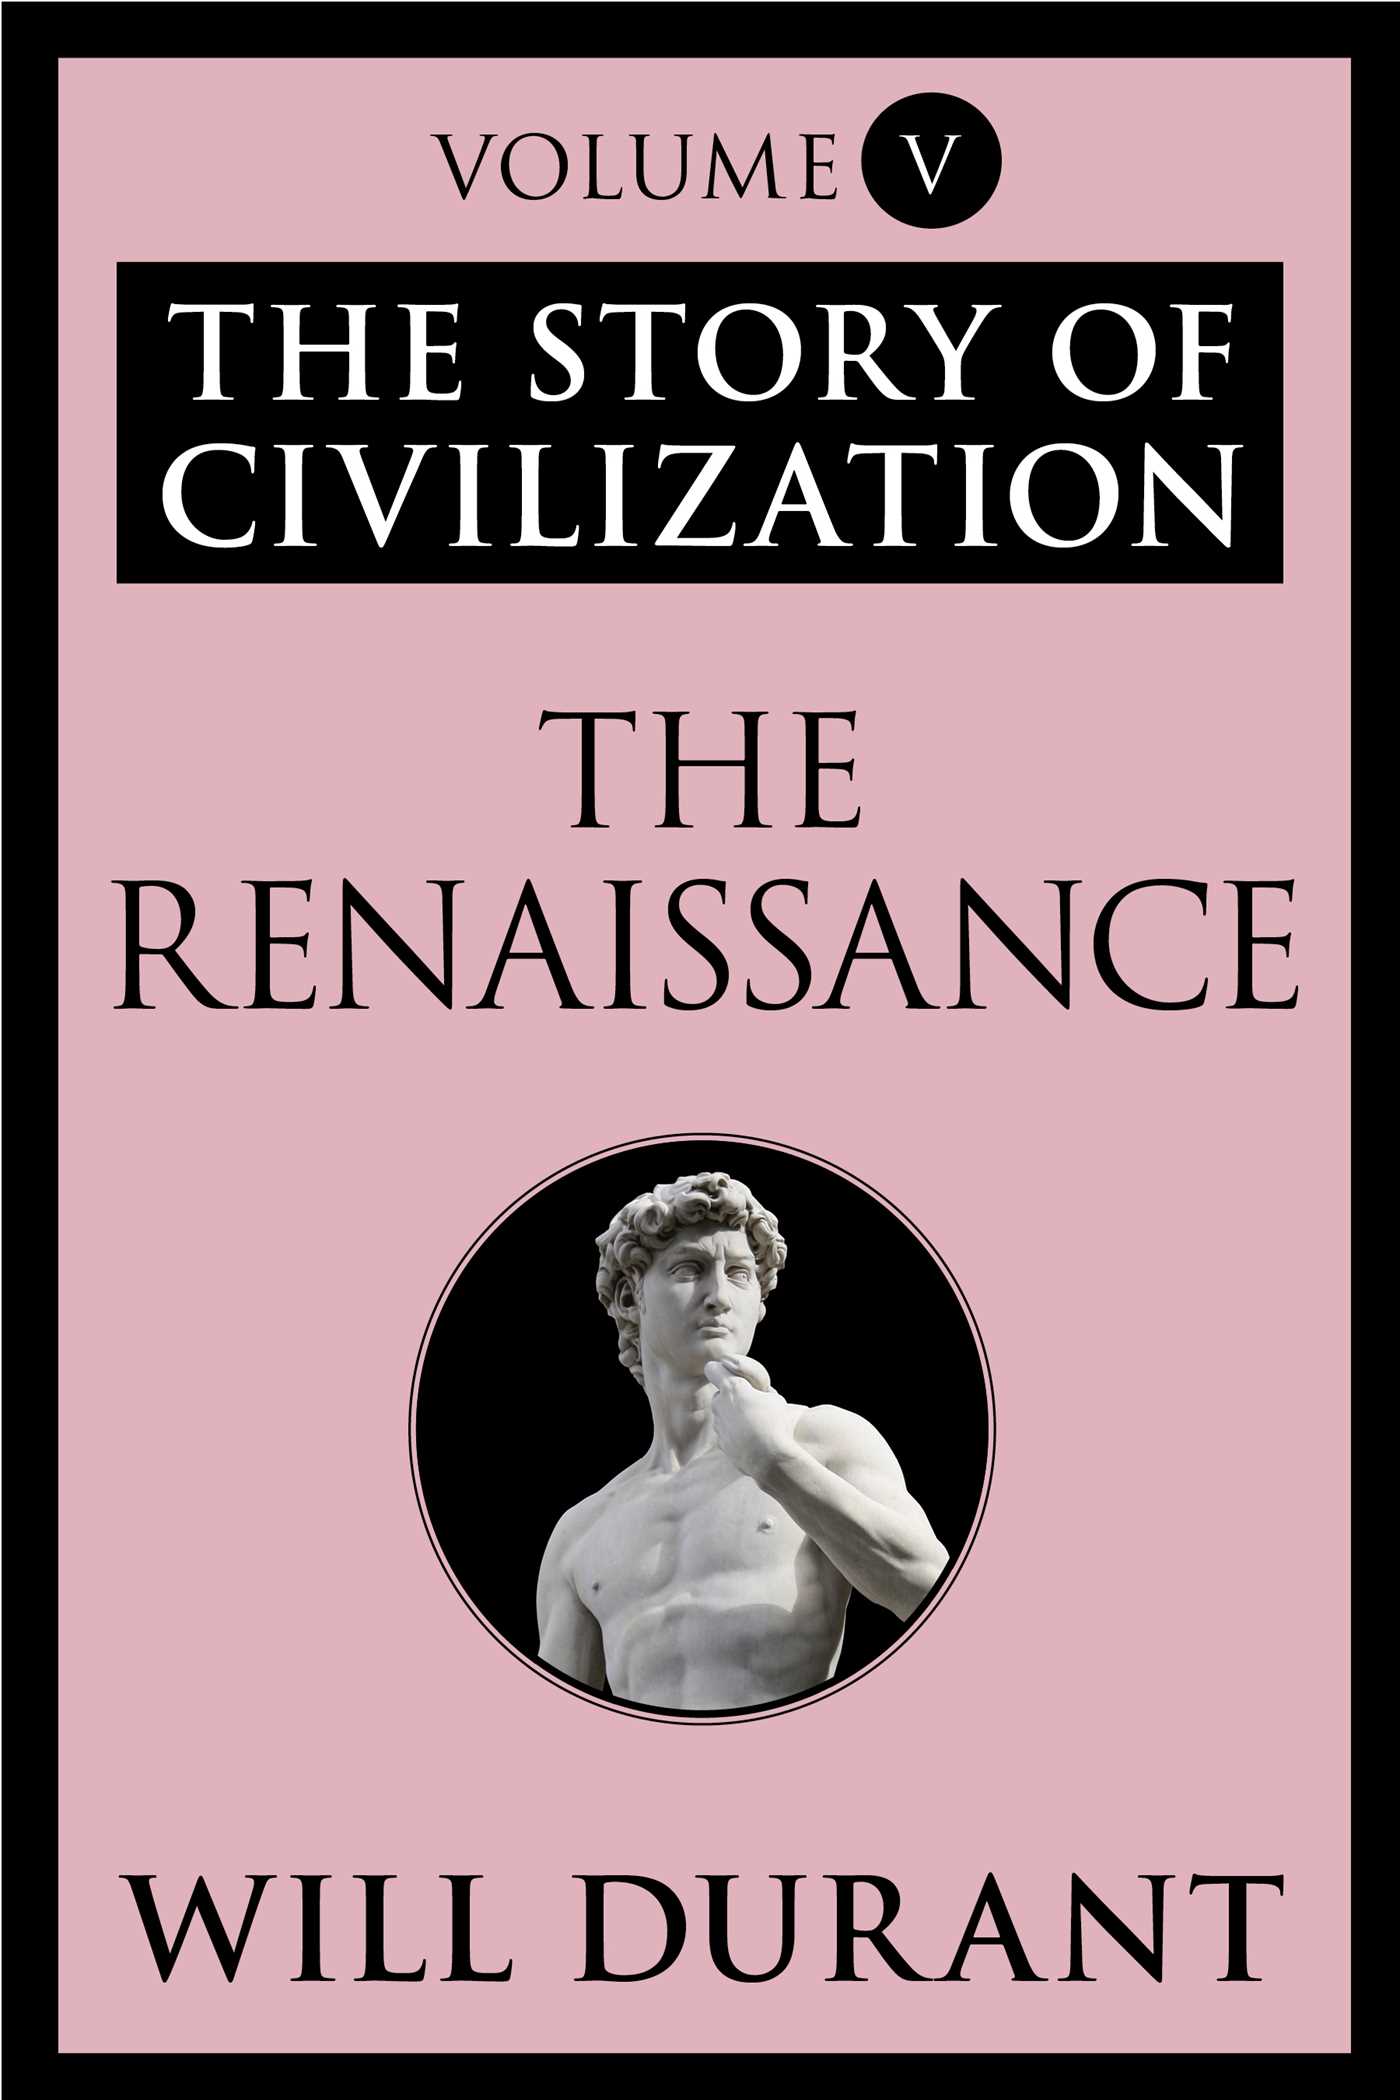 The Renaissance - 10-14.99